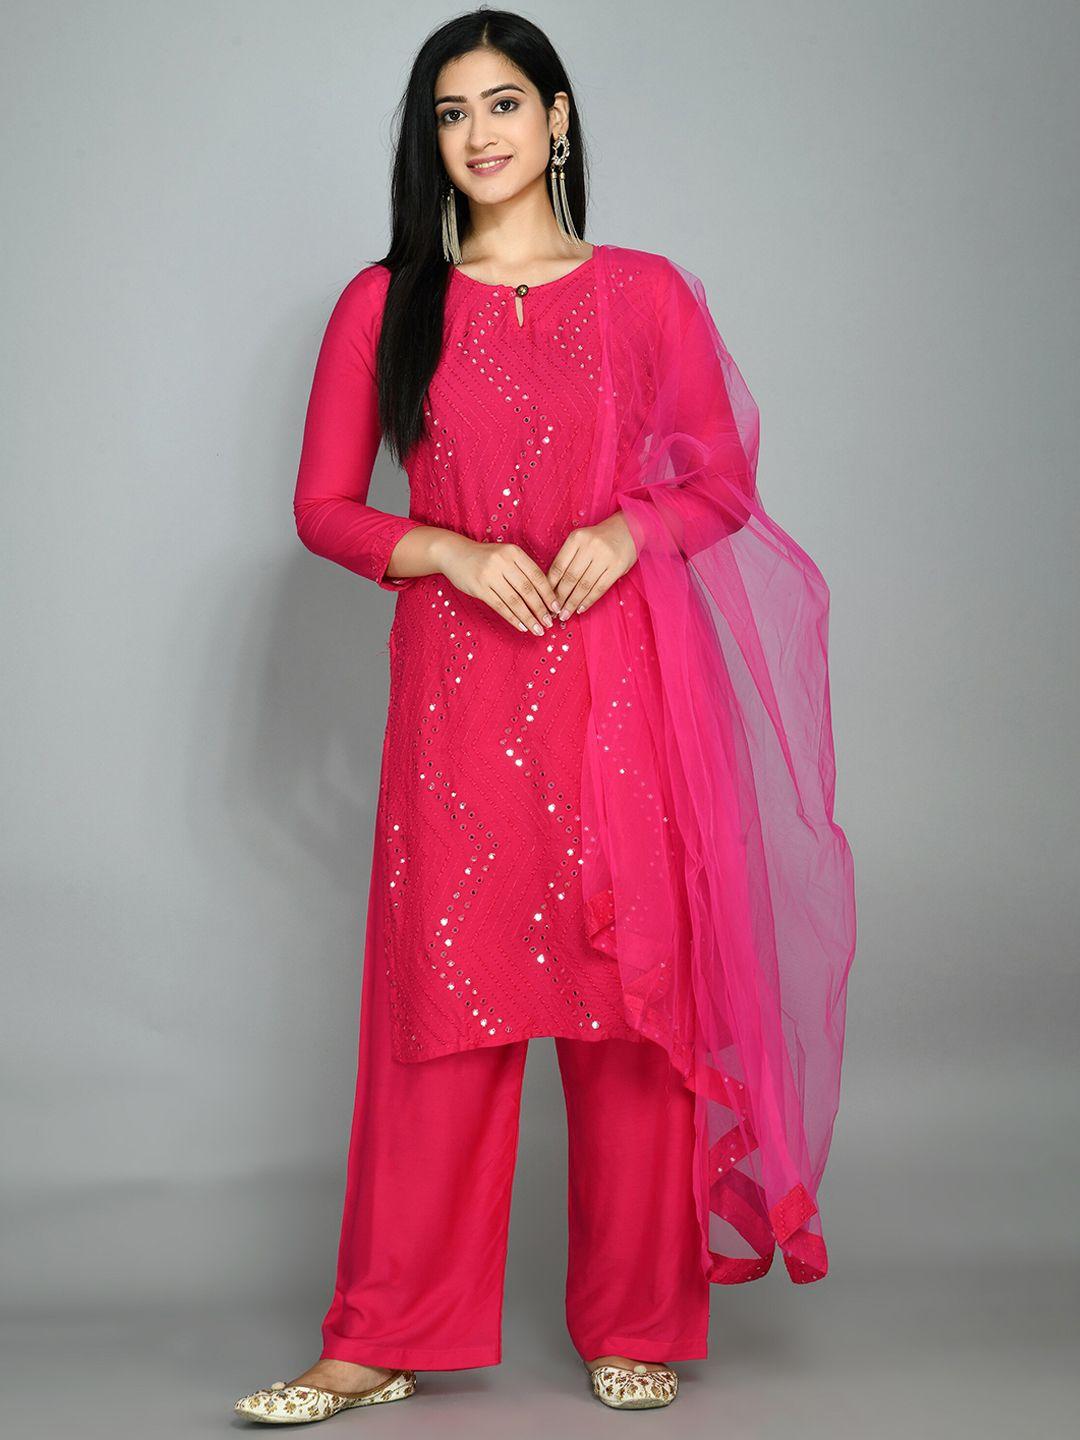 queenswear creation women pink mirror work embroidered kurta with palazzos & dupatta